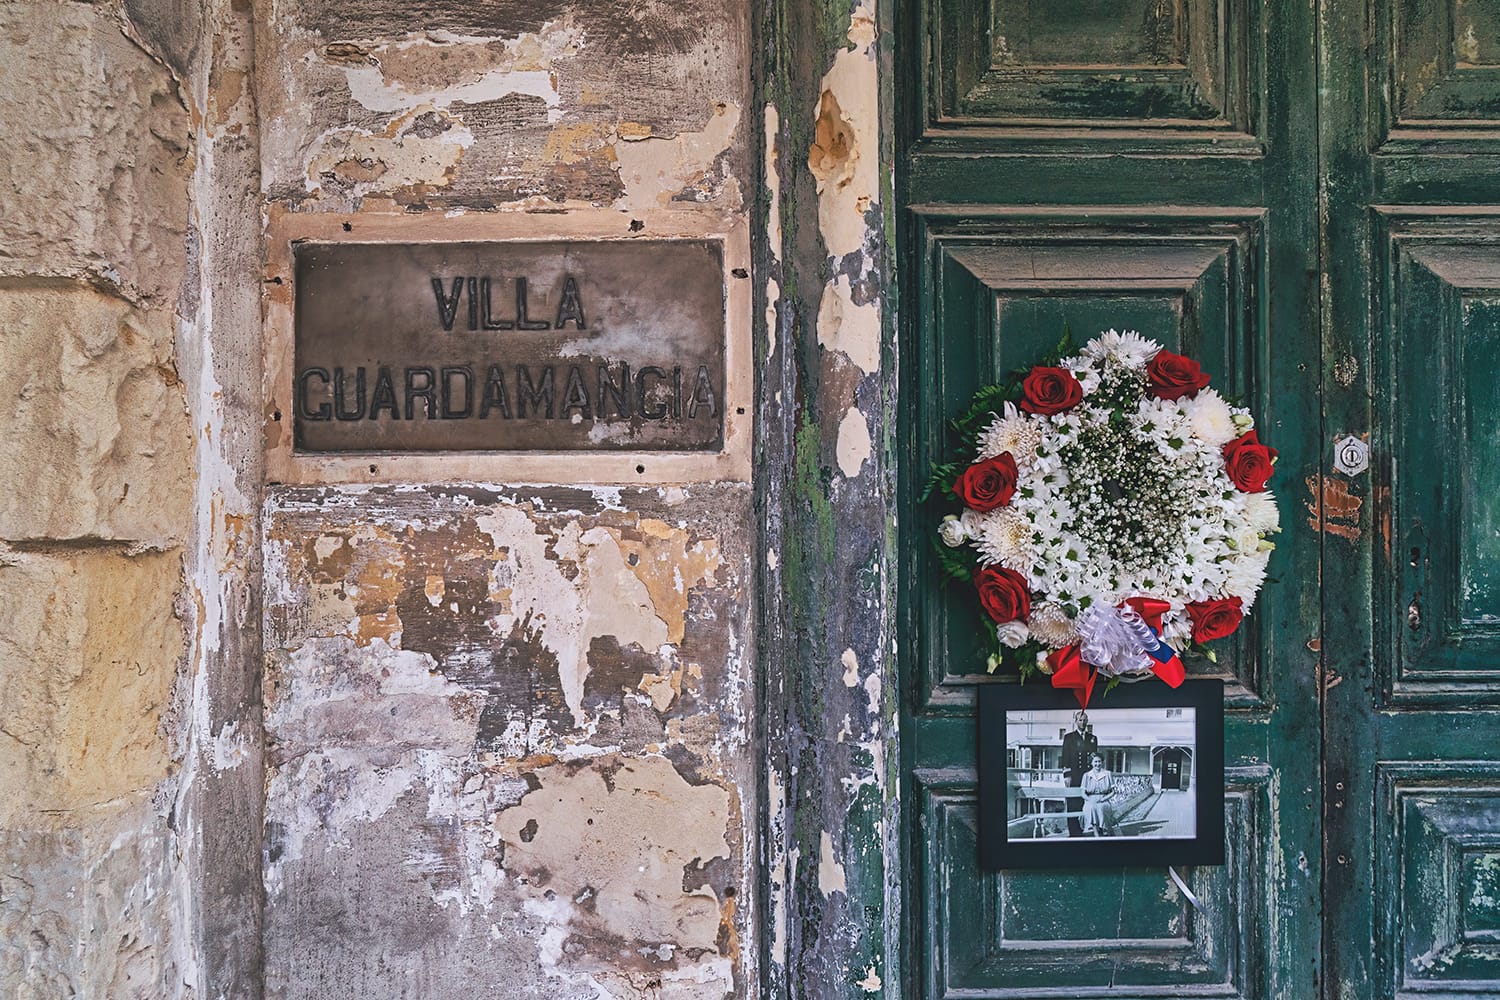 Villa Guardamangia, antiga casa de la reina Isabel de Gran Bretanya, quan va viure a Malta entre 1949 i 1951.  Corona i flors a prop de la porta en relació amb la seva mort: Pietà, Malta